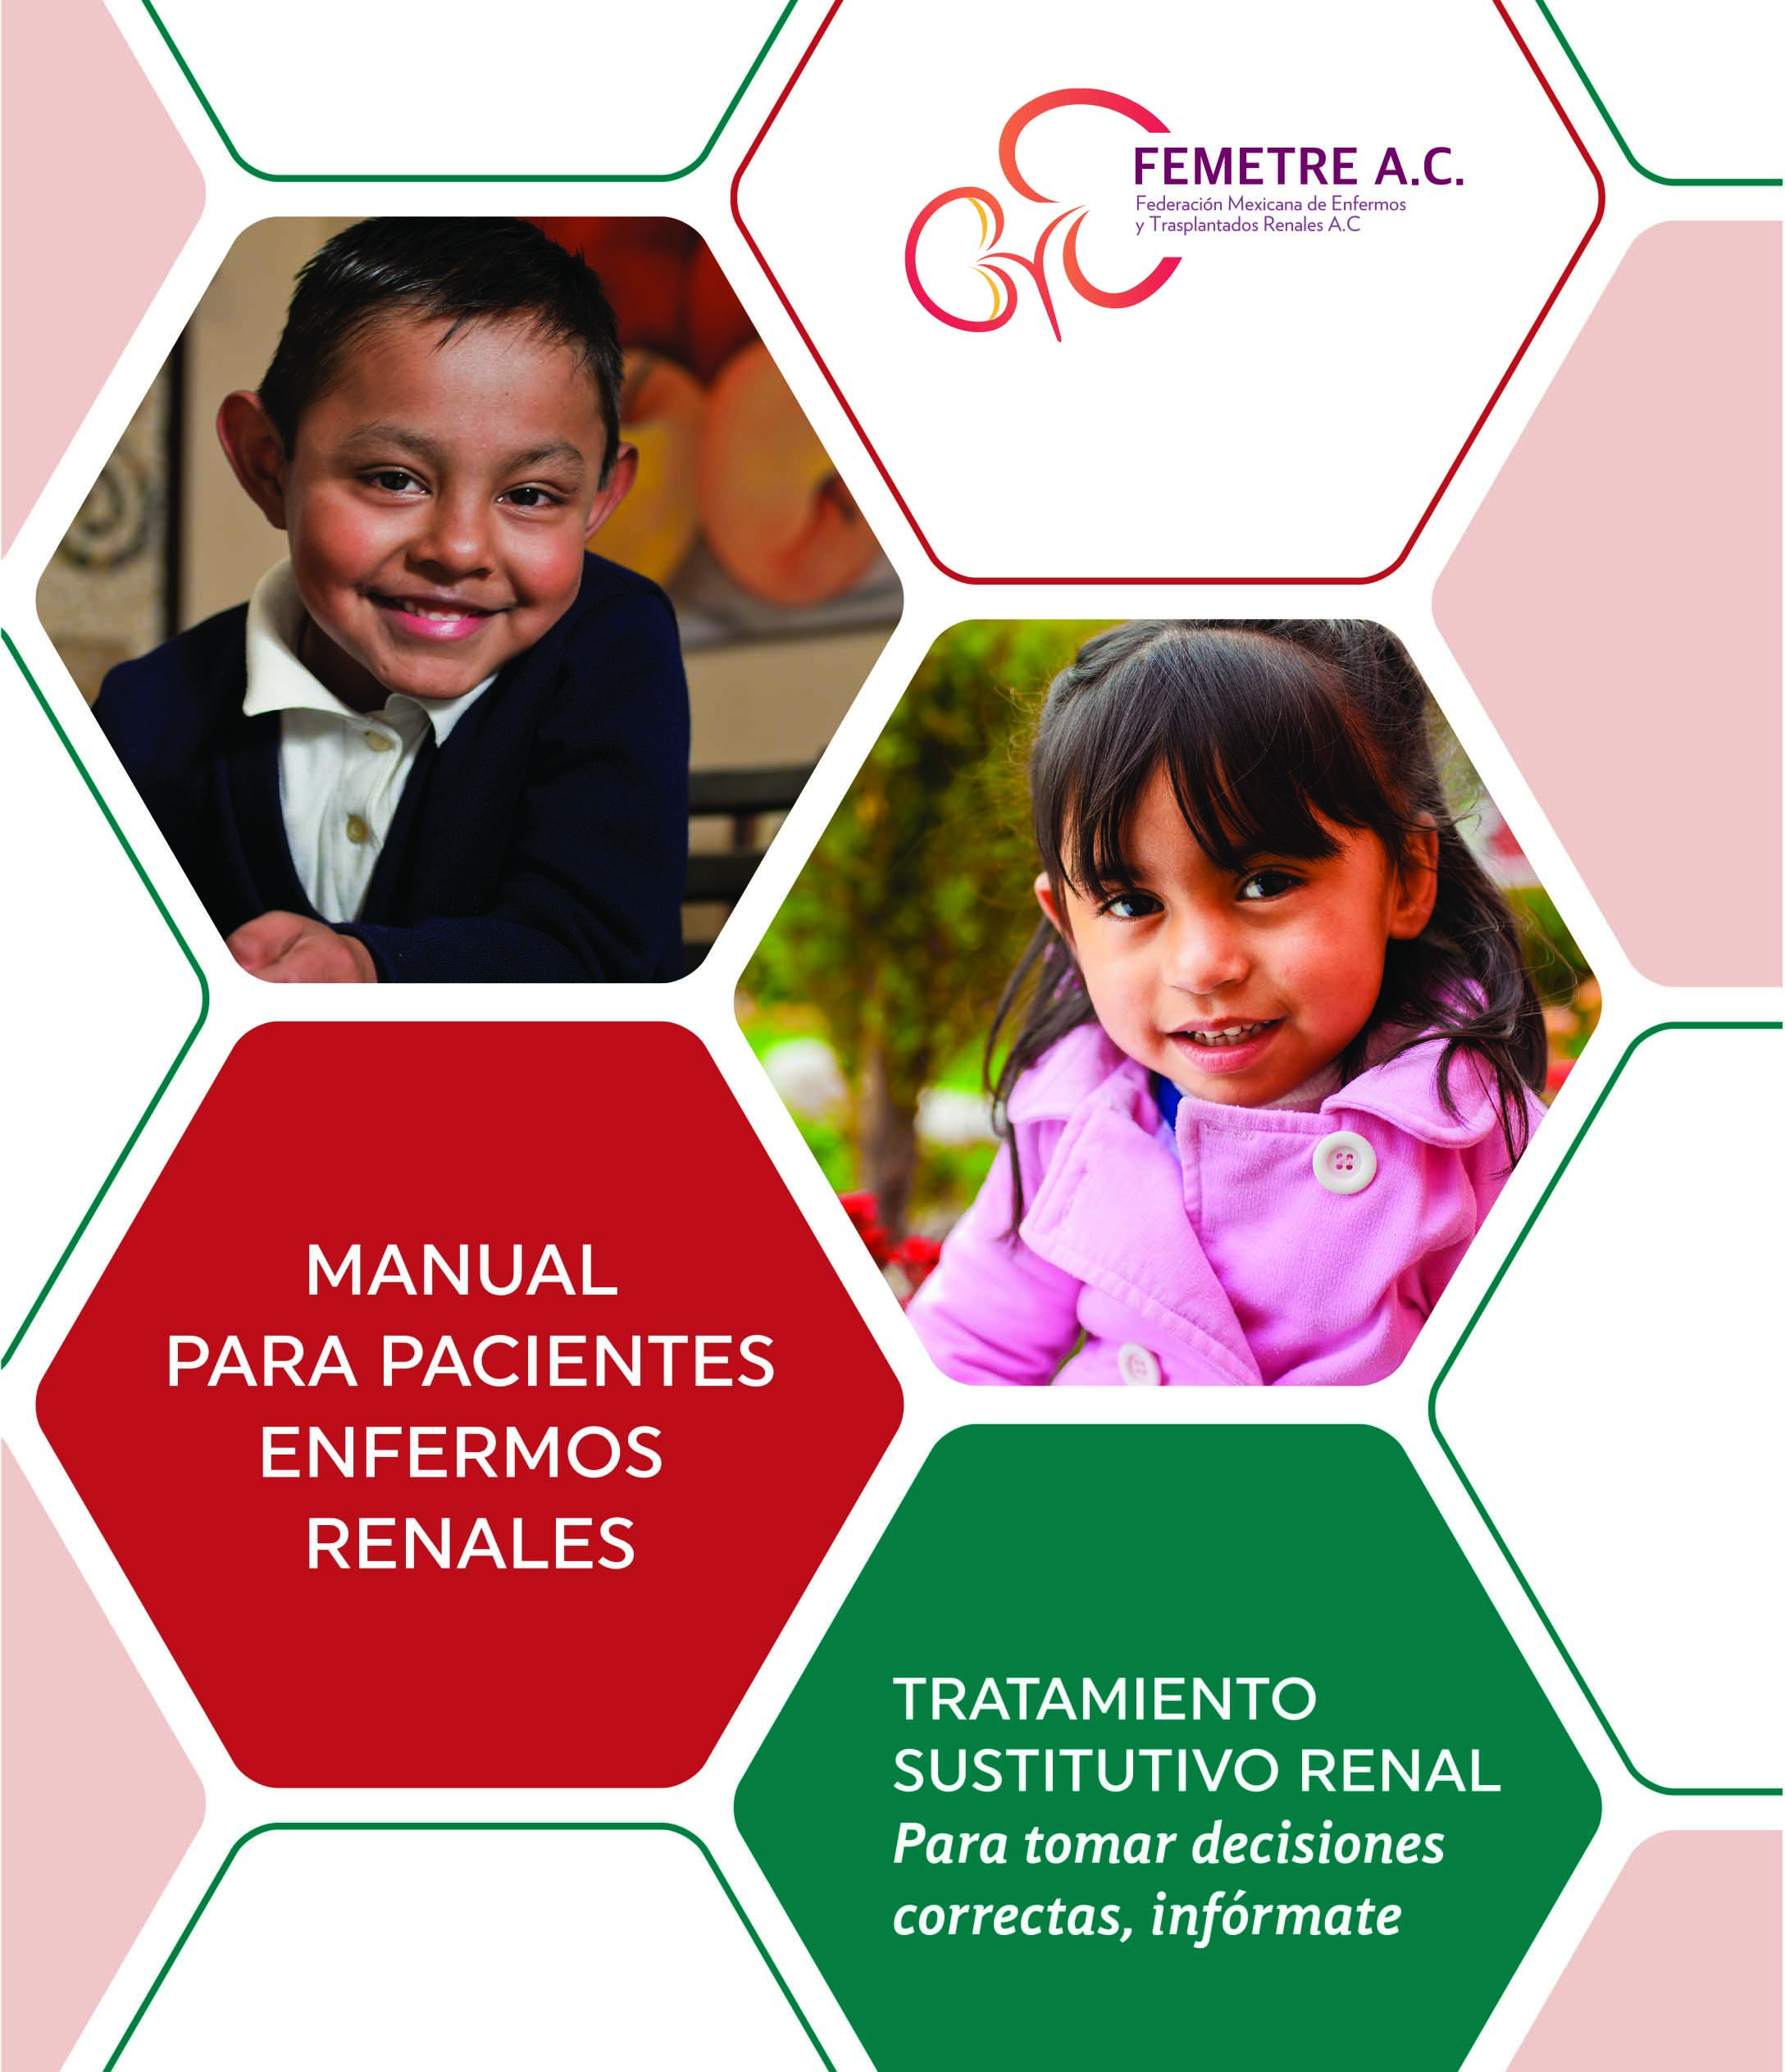 FEMETRE presenta Manual para Pacientes con Enfermedad Renal